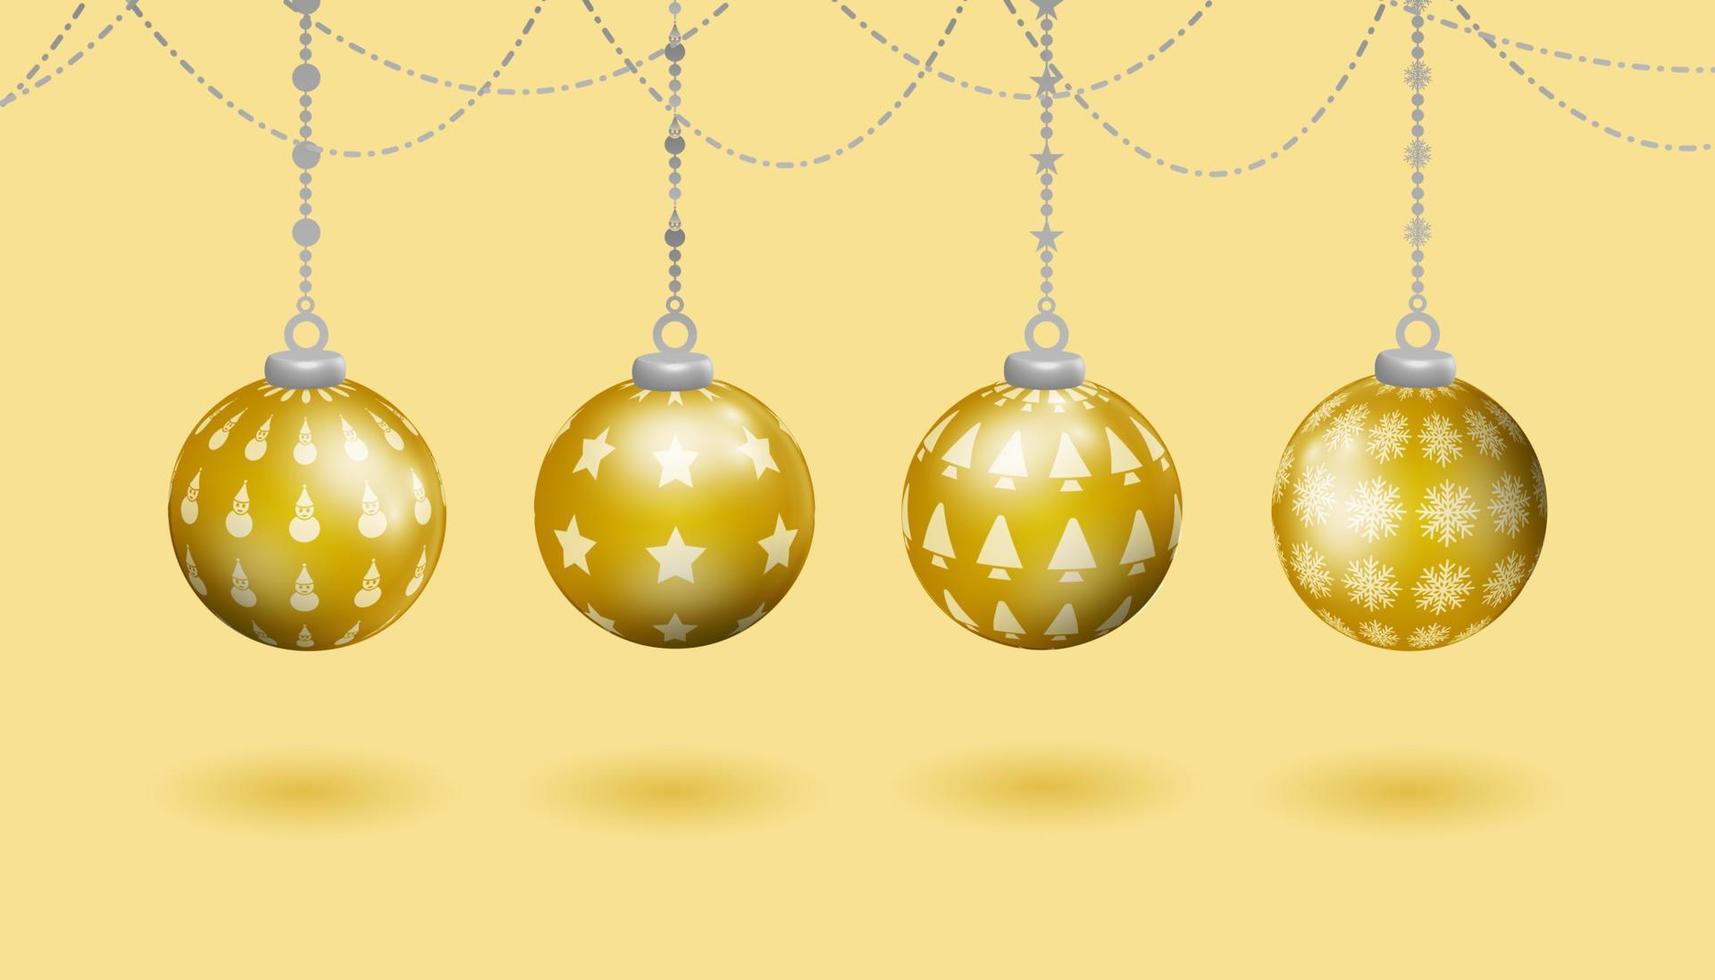 juego de decoración de navidad de bolas colgantes realistas de oro, con varios patrones de símbolos de navidad, árbol de navidad, muñeco de nieve, estrellas, copos de nieve vector